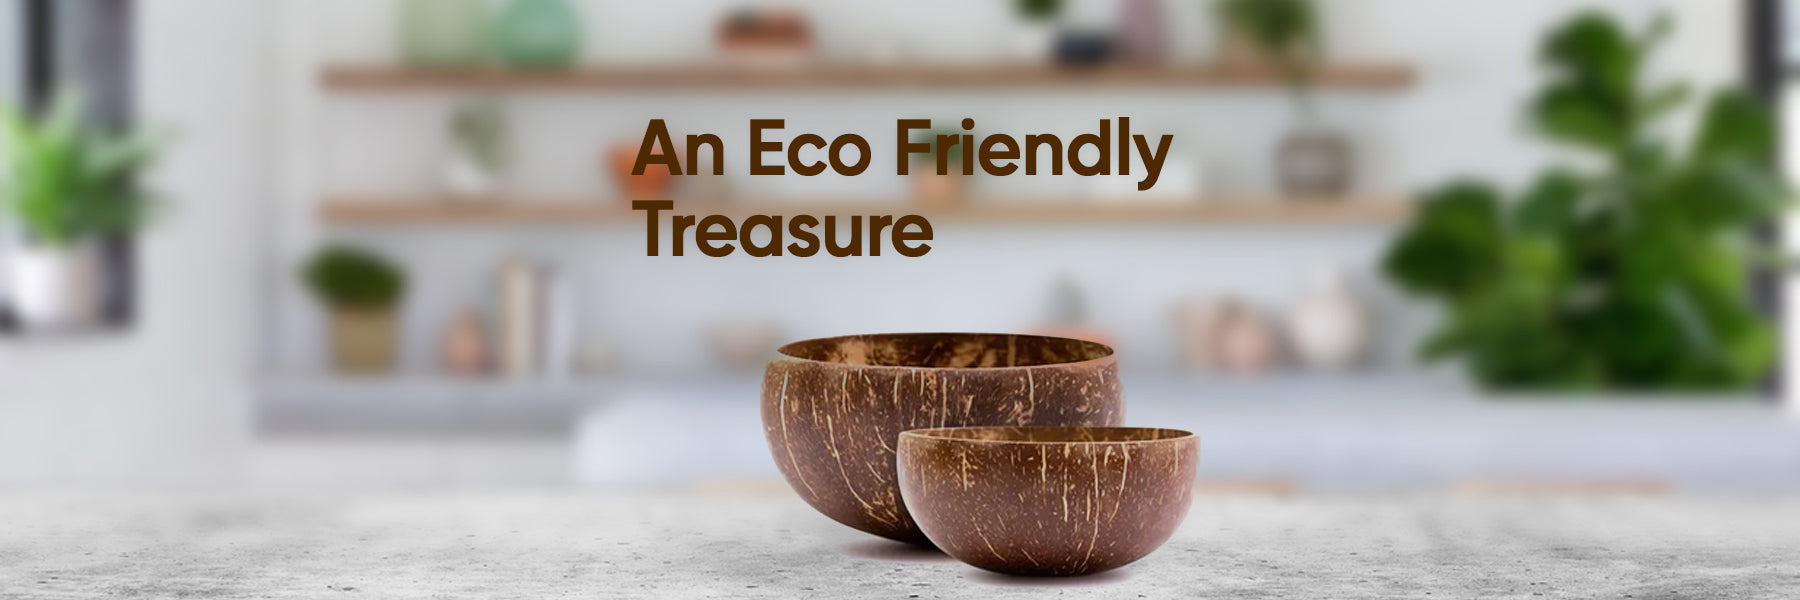 The Eco-Friendly Treasure! FromIndia.com